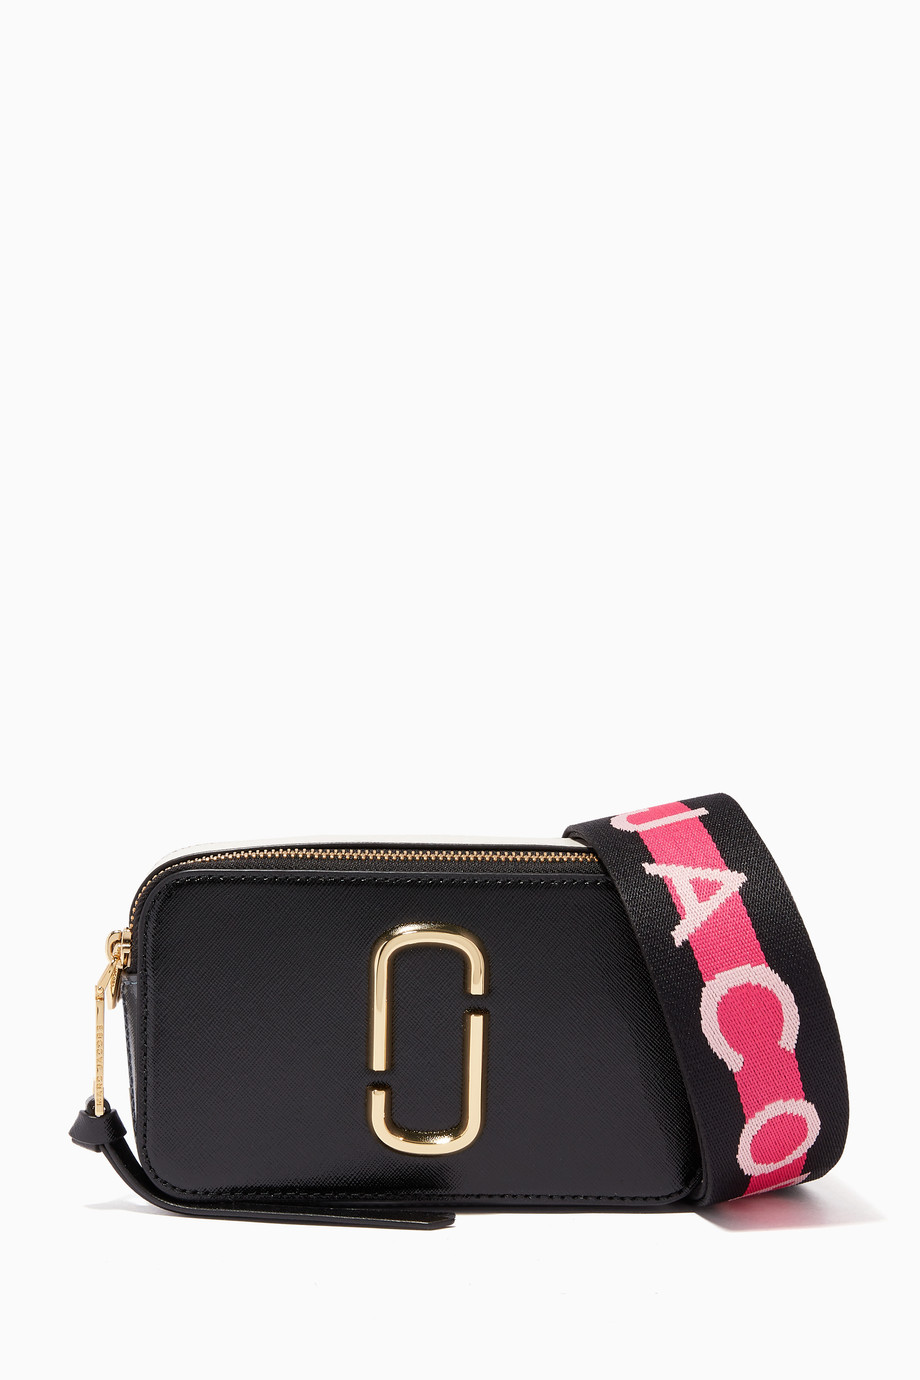 Shop Marc Jacobs Black Black Small Snapshot Shoulder Bag for Women ...